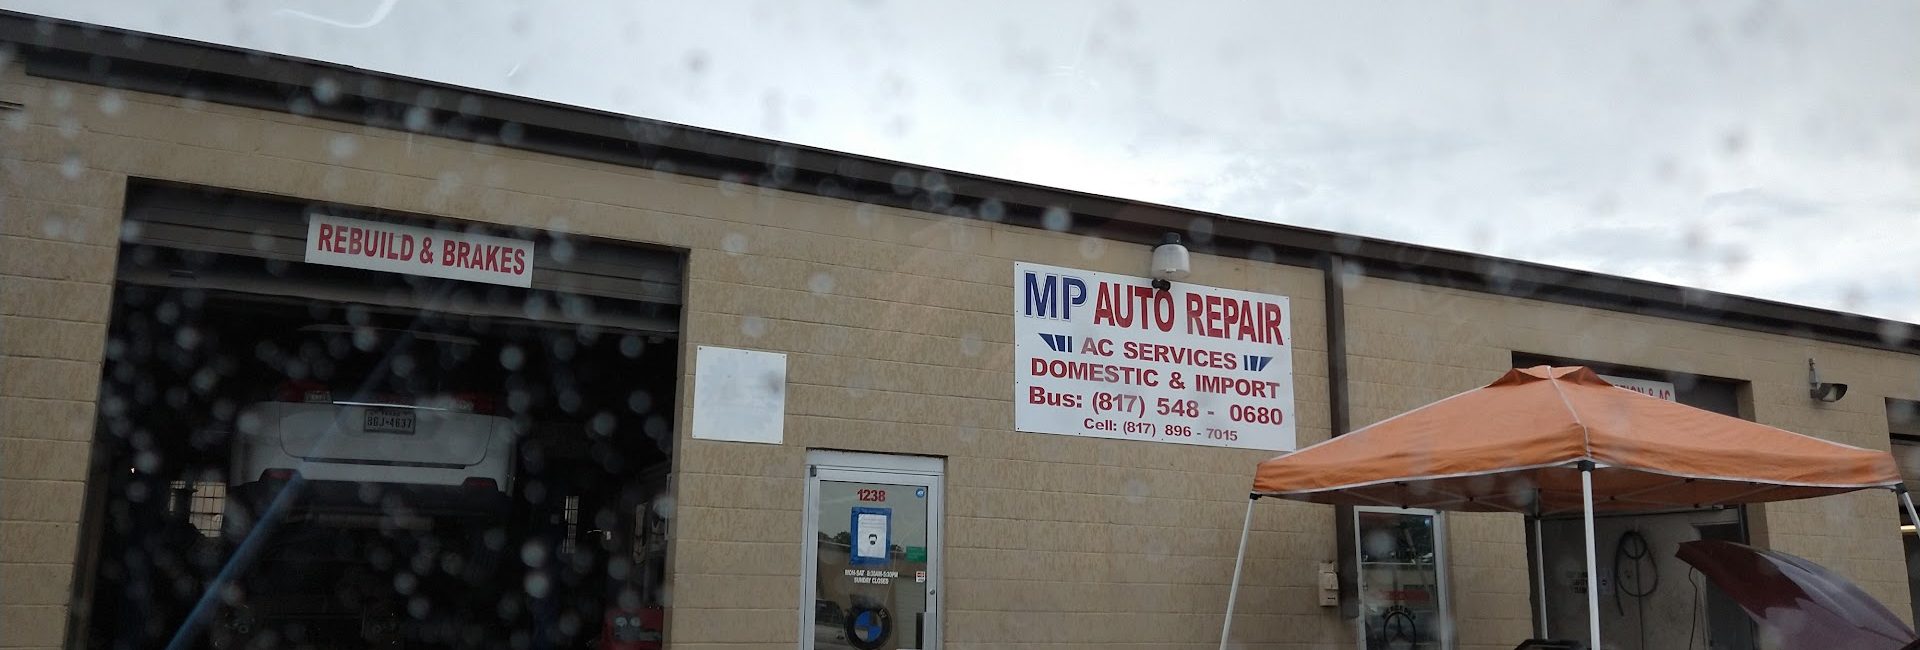 M P Auto Repair 6